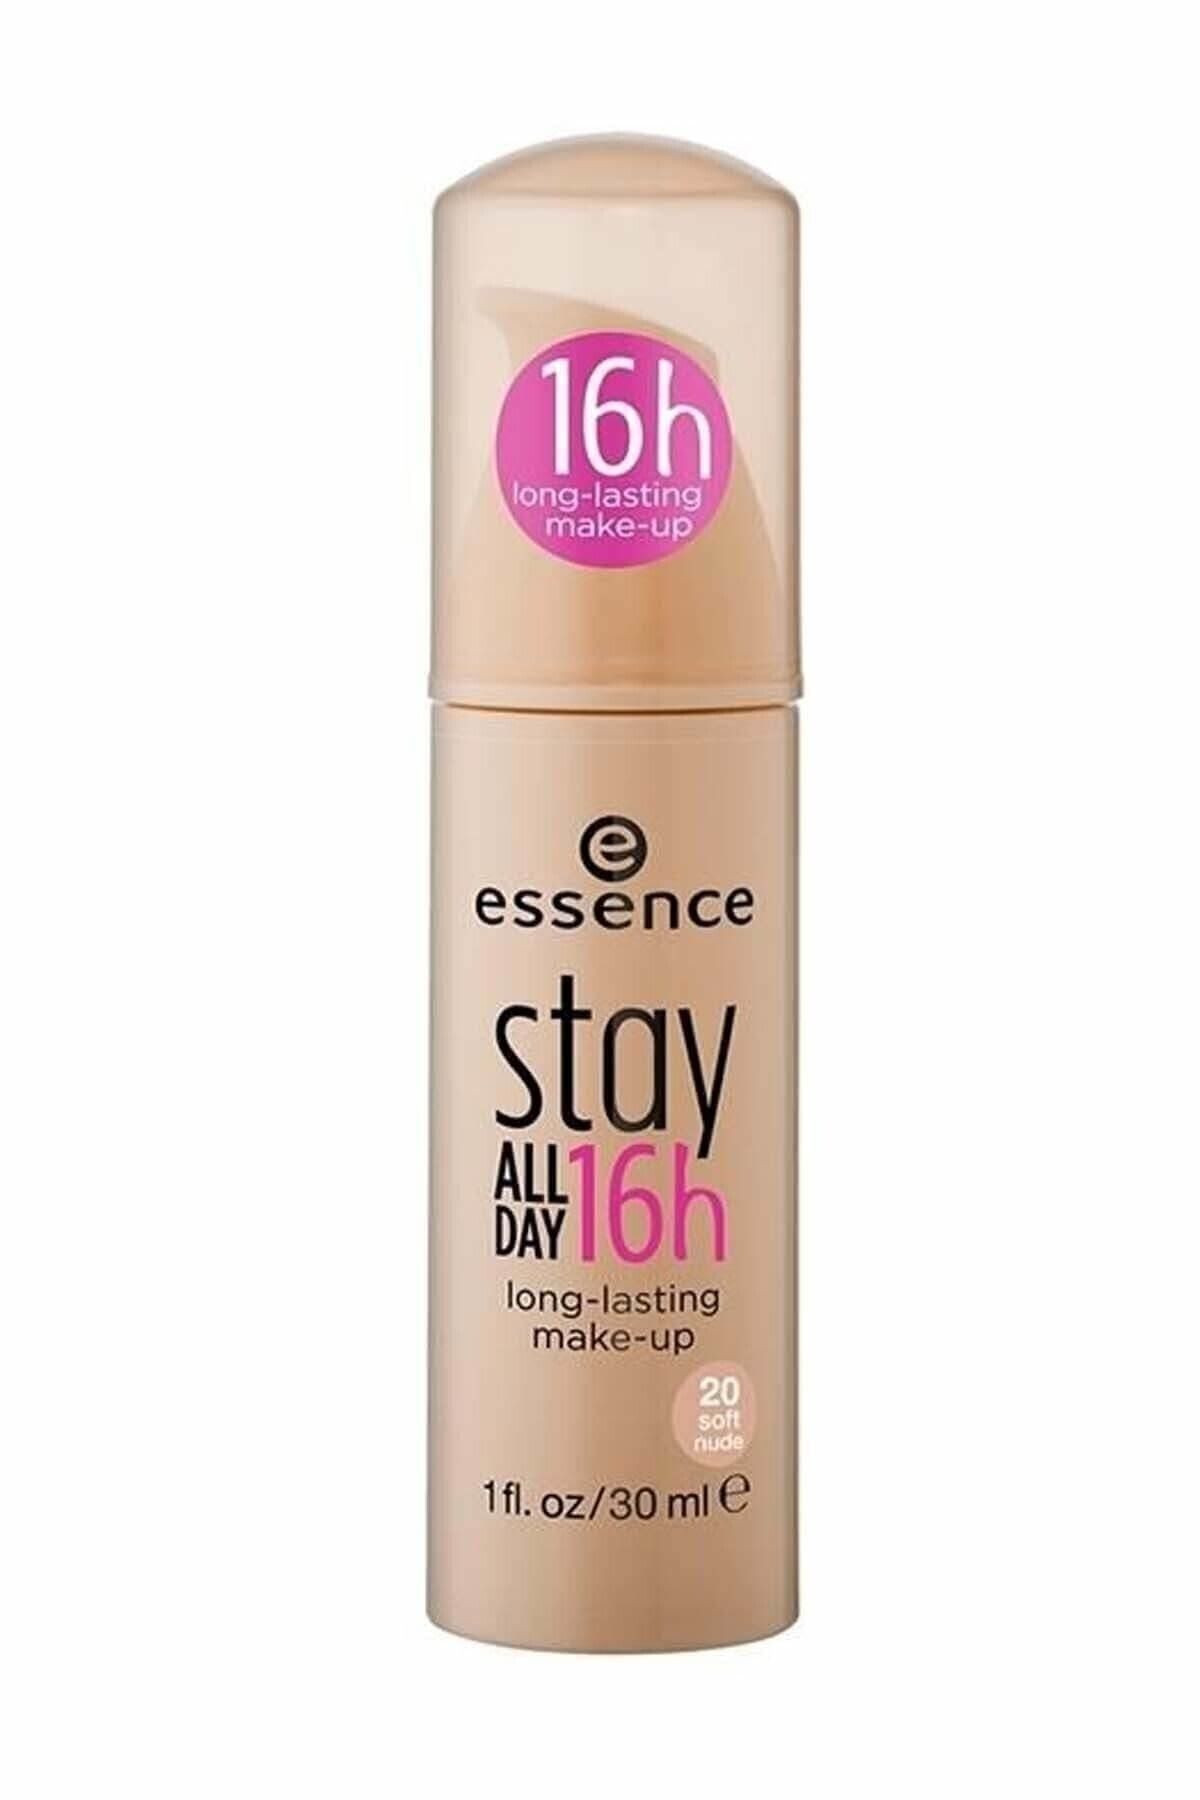 Essence Stay All Day 16h 16 Nude Saat Foundation - Trendyol Fondöten Yorumları 20 (30ML) 20 Soft Fiyatı, - 4250338410828